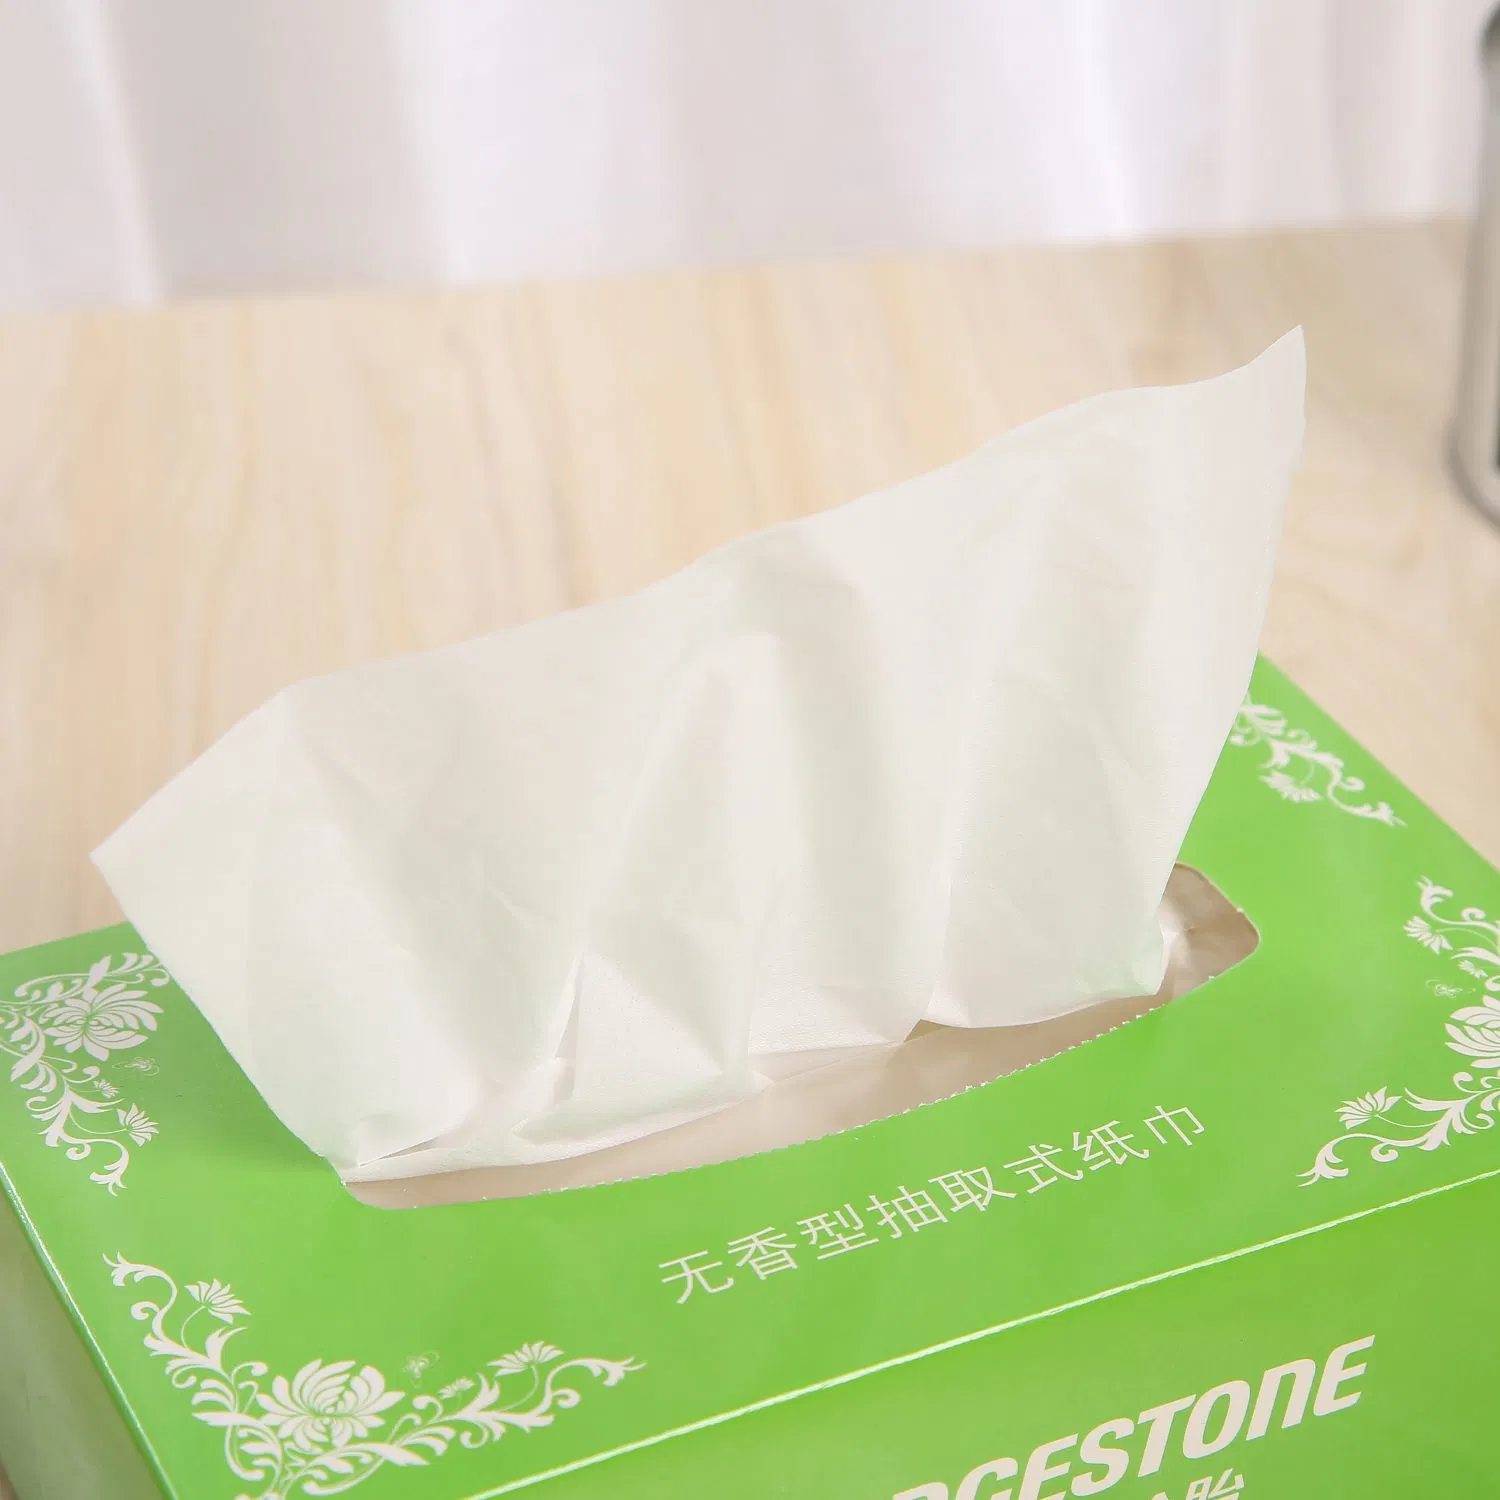 Super Soft Free Sample Box Facial Tissue Paper Clear Paper (Супер мягкая непрозрачная бумага для бумаги для лице